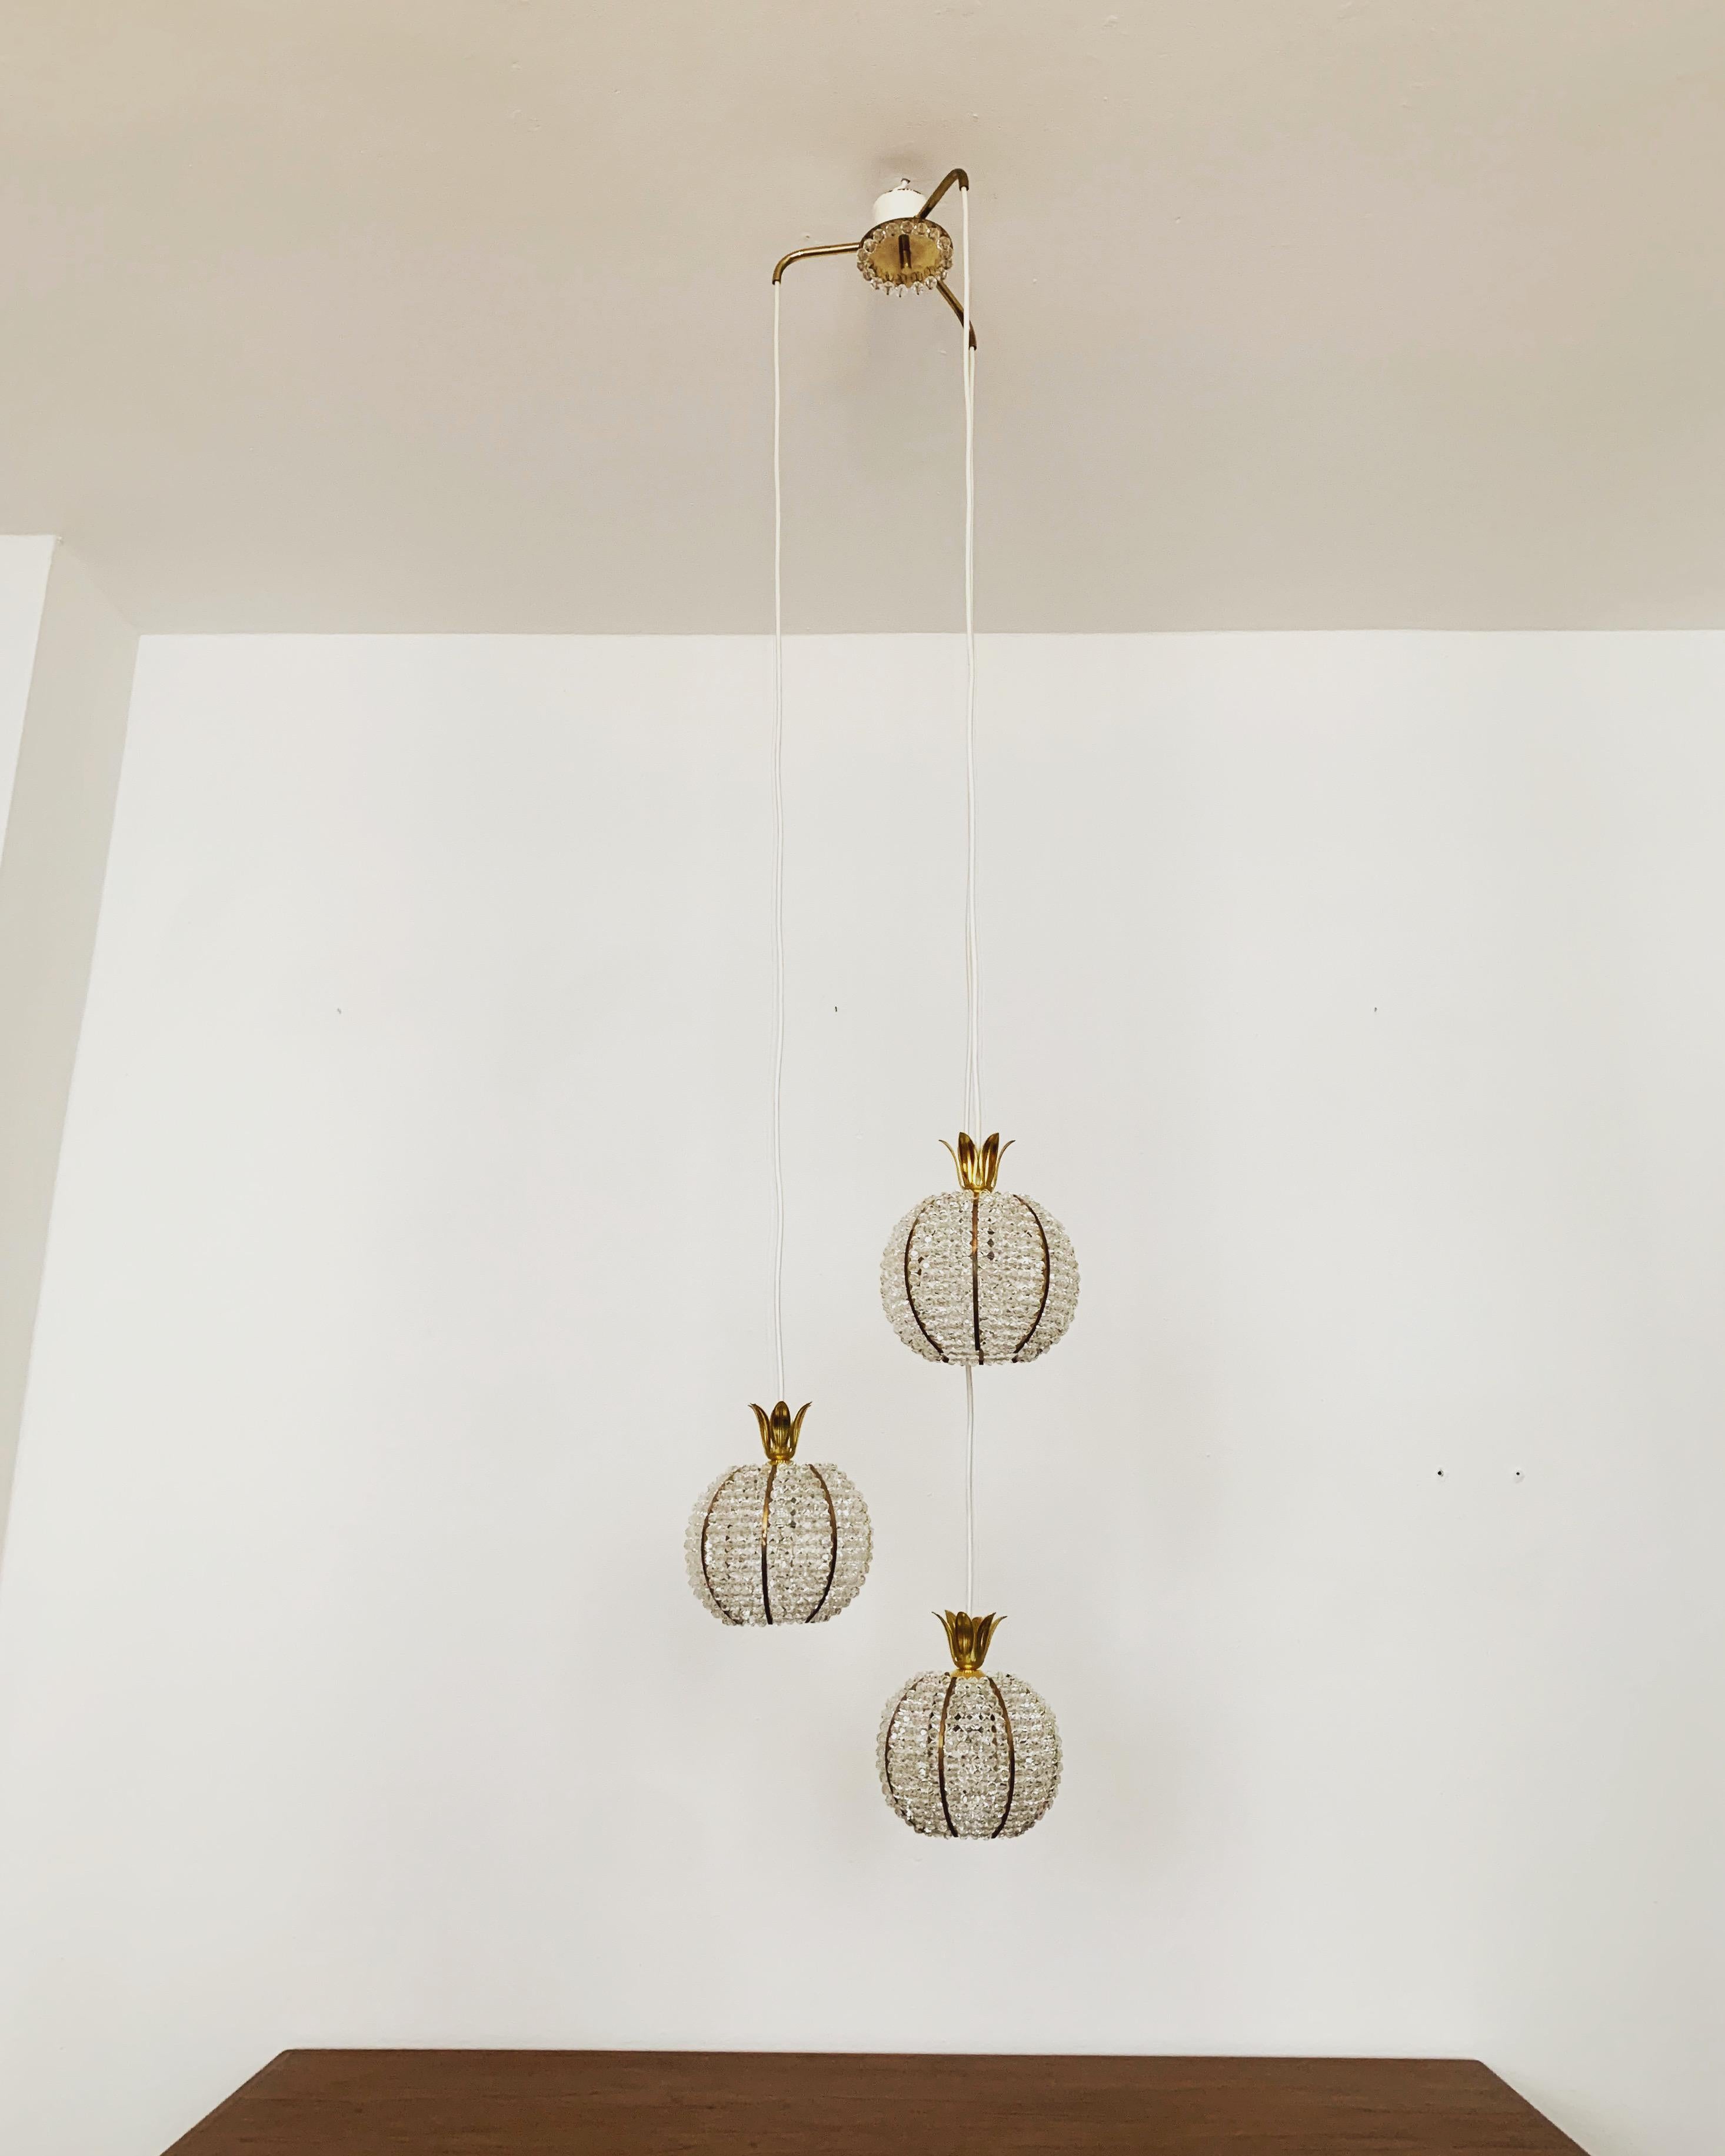 Merveilleuse lampe en cascade des années 1960.
La lampe, avec ses boules en plexiglas richement équipées et ses détails en laiton, a un aspect très luxueux et brille particulièrement bien.
Le design et les matériaux utilisés créent une grande